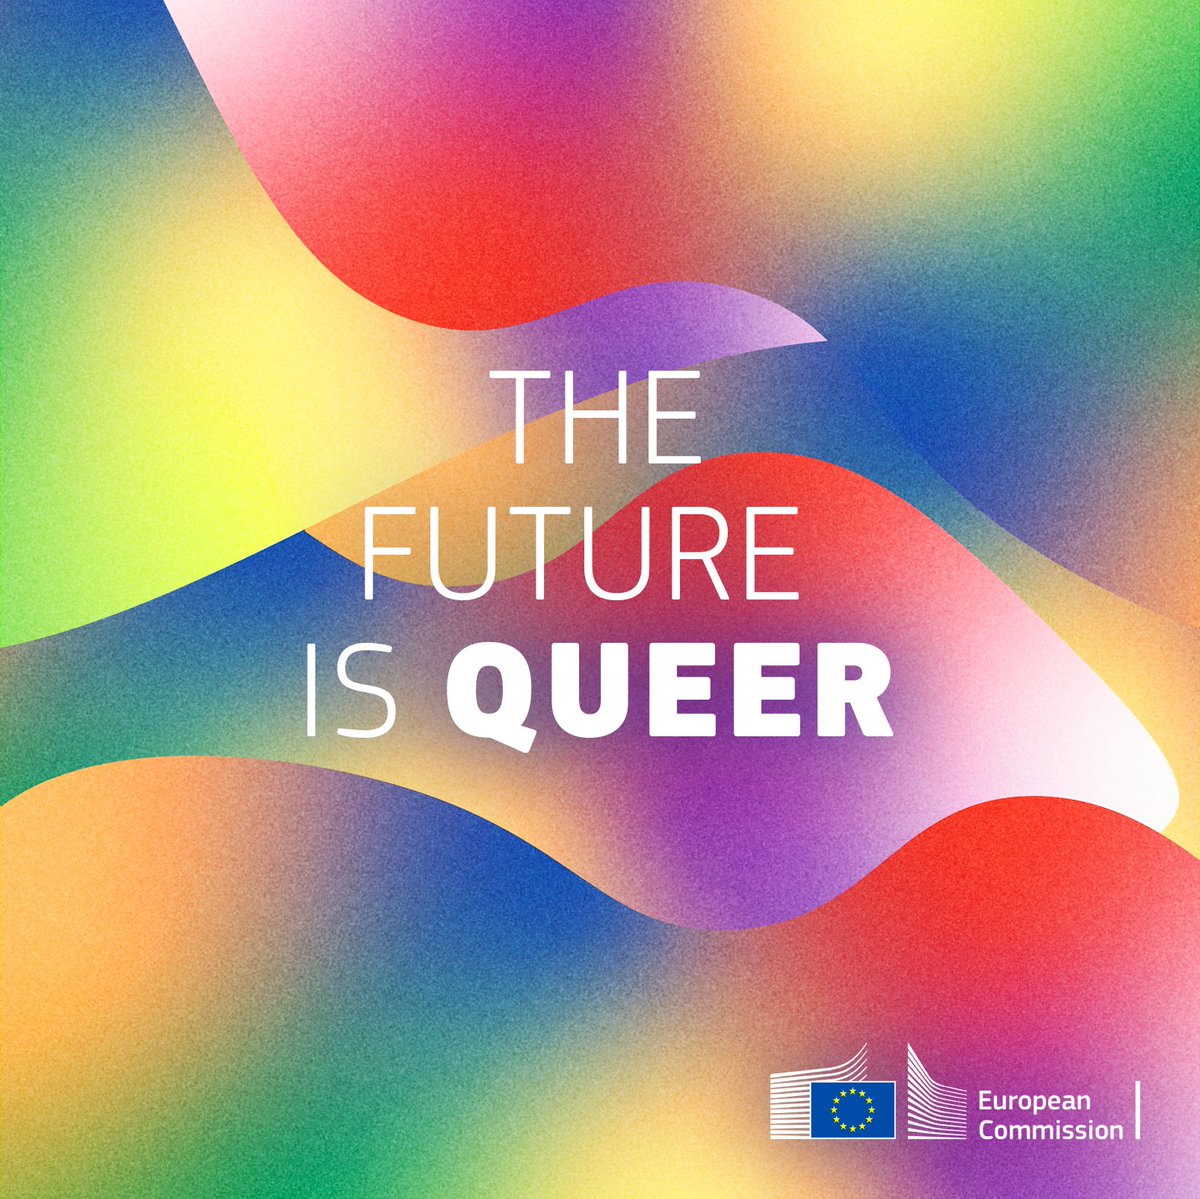 Η ΕΕ διακηρύσσει: «Το μέλλον ανήκει στην ομοφυλοφιλία»!